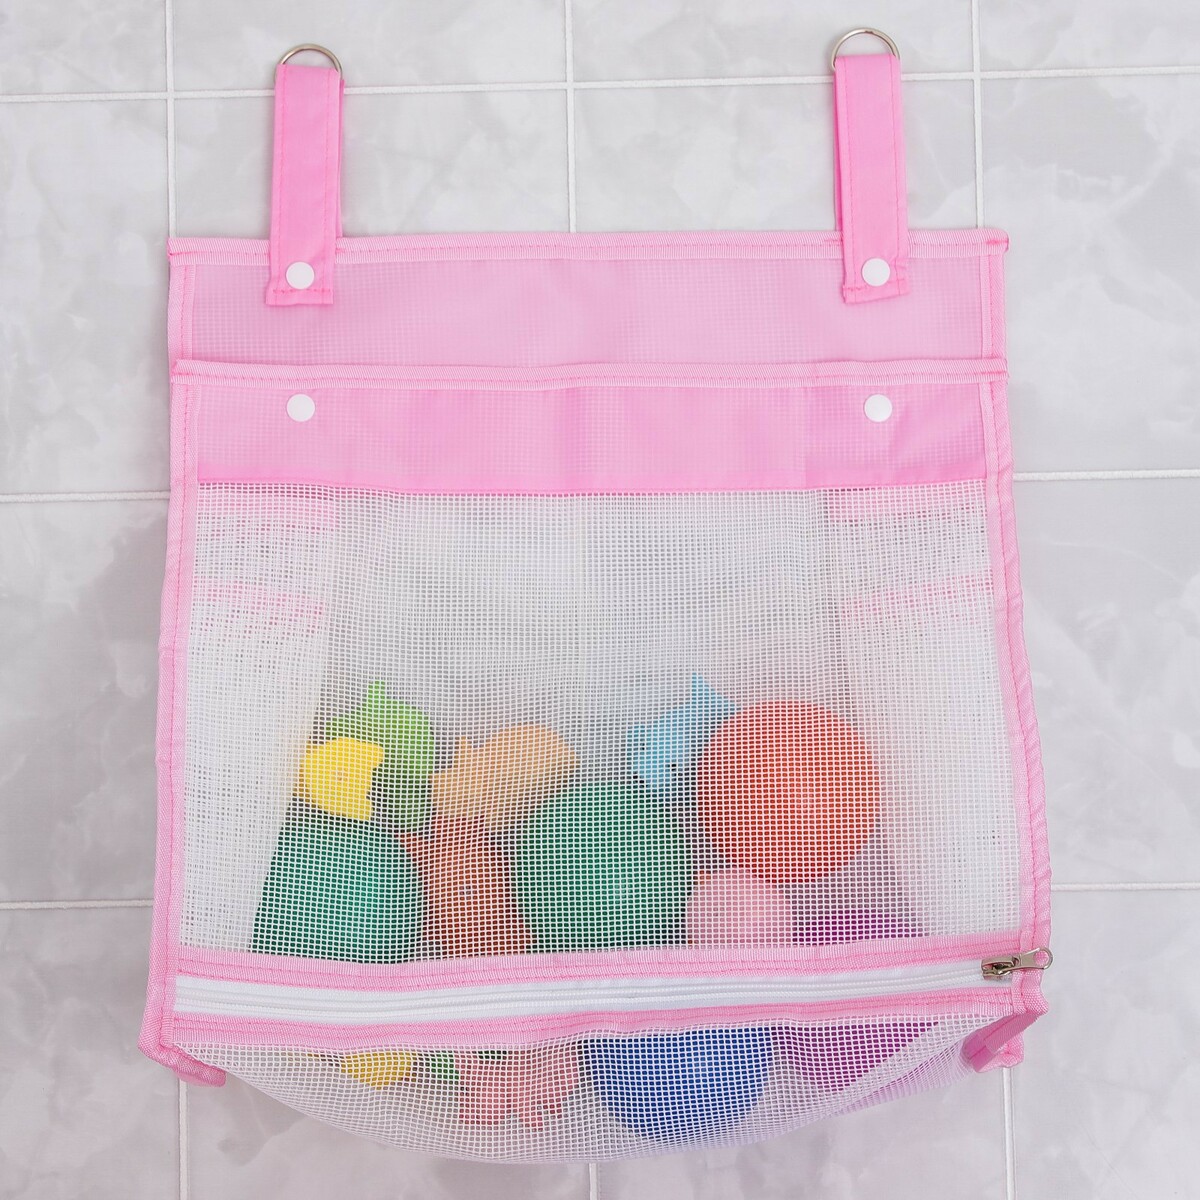 Сетка для хранения игрушек в ванной, цвет розовый сетка для хранения игрушек в ванной розовый